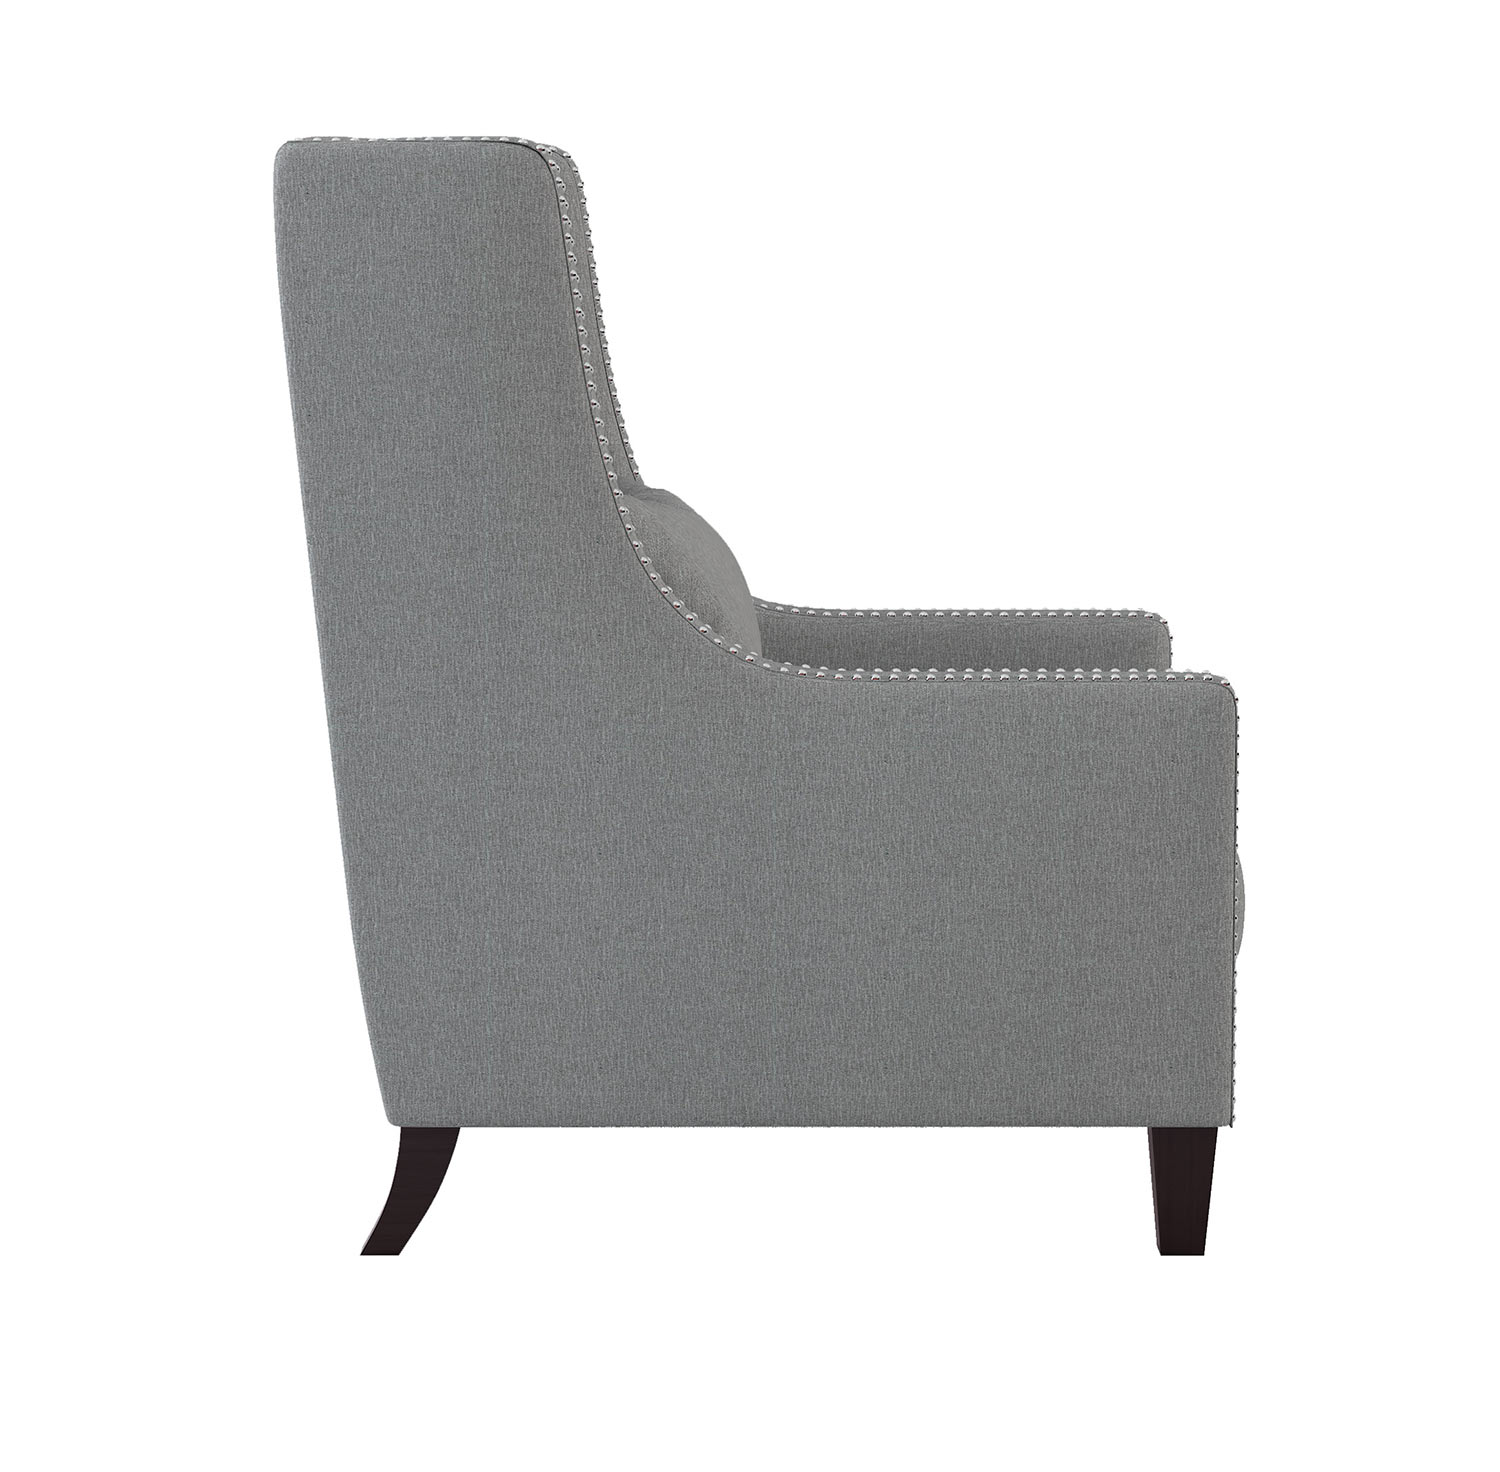 Homelegance Keller Accent Chair - Light gray